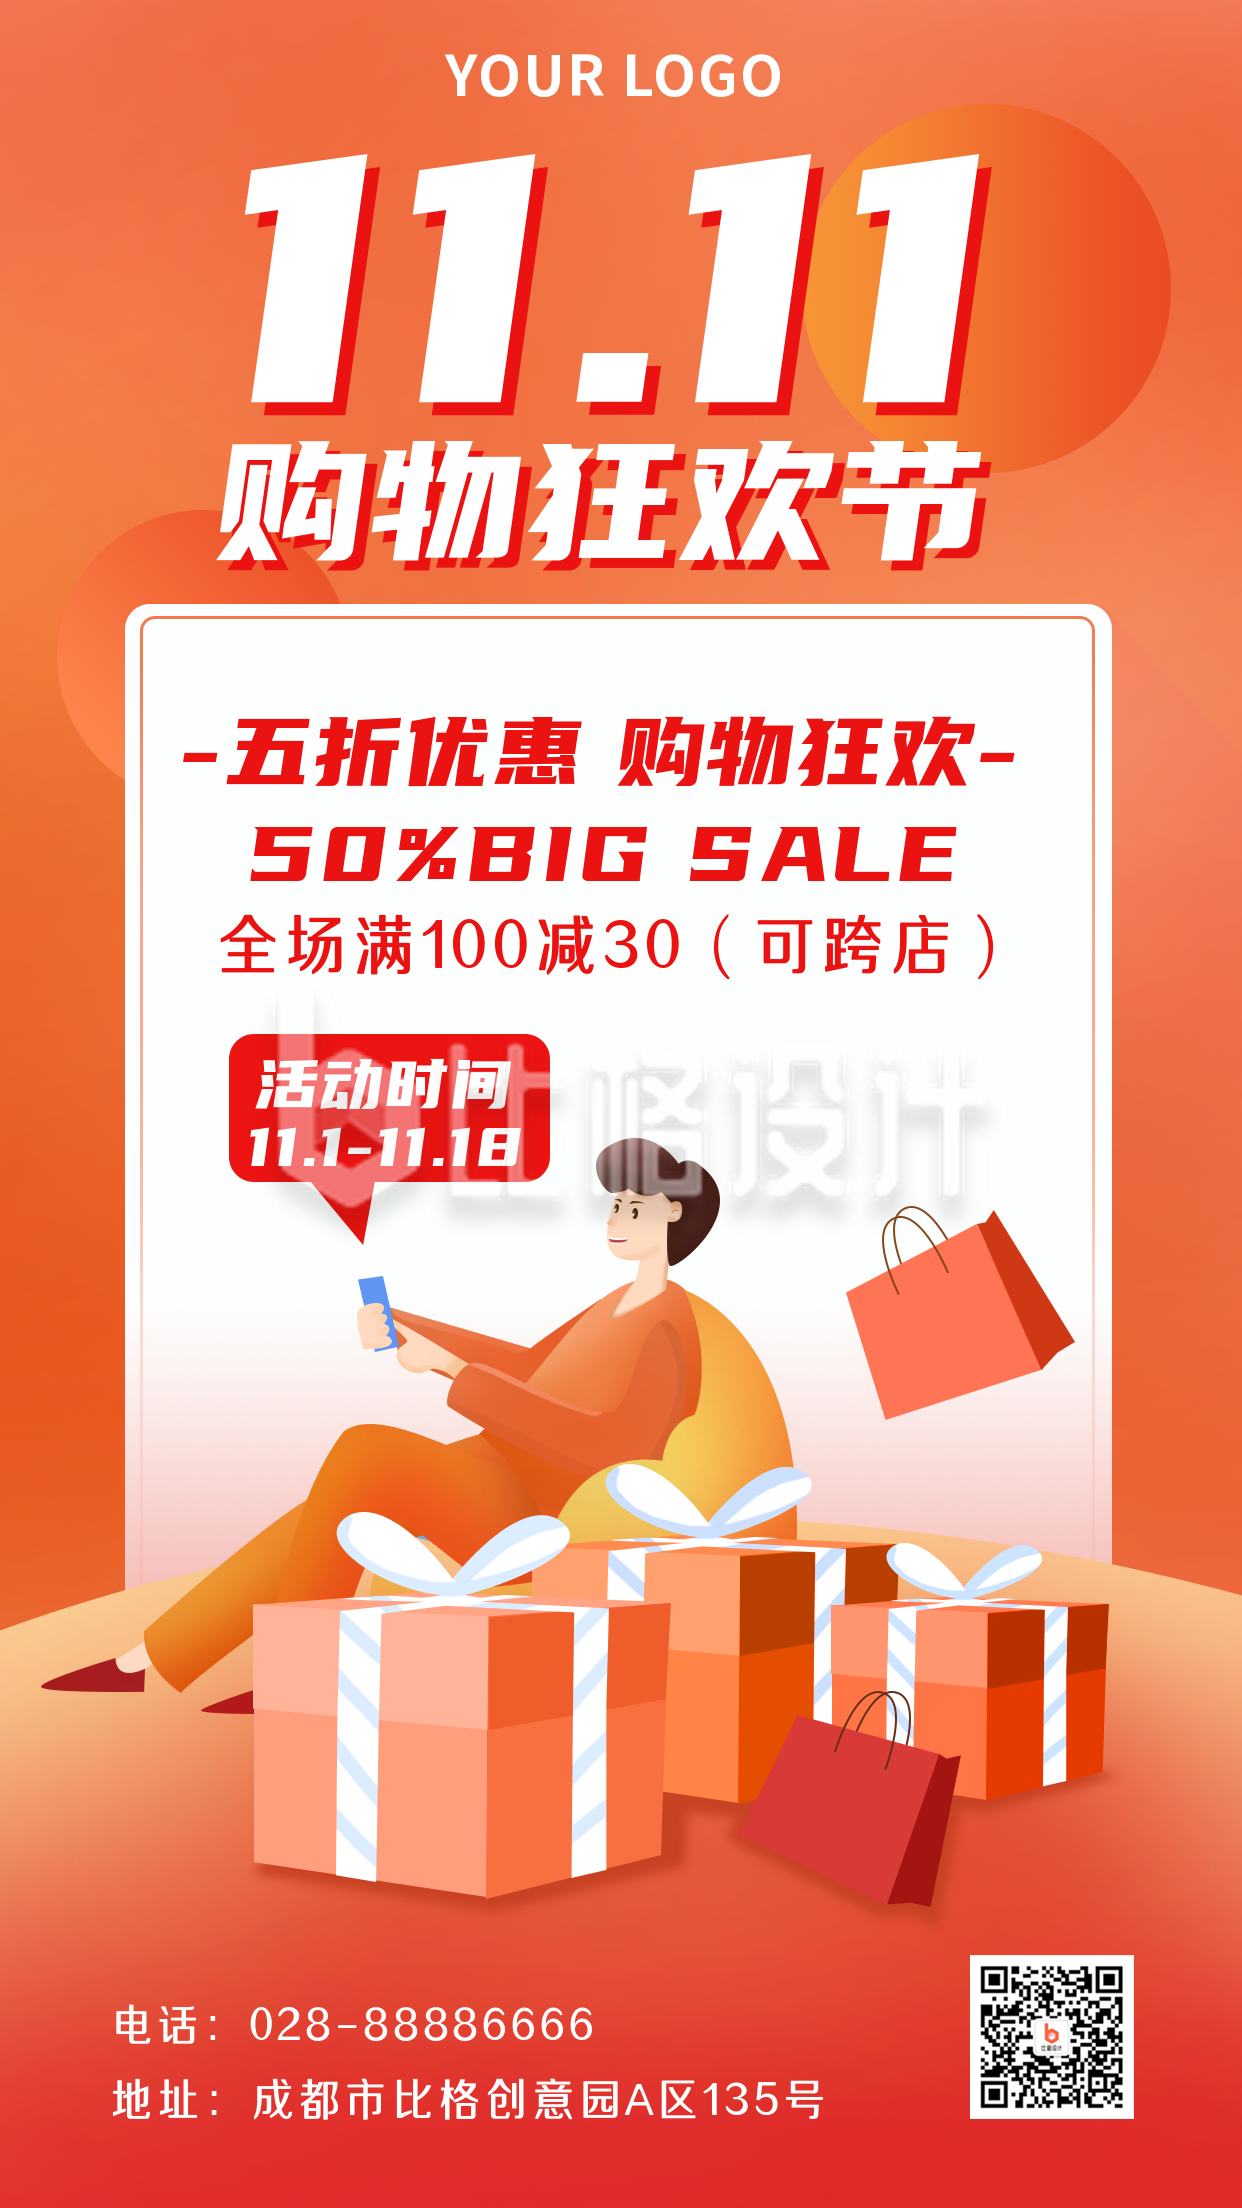 双十一购物狂欢促销活动宣传手机海报